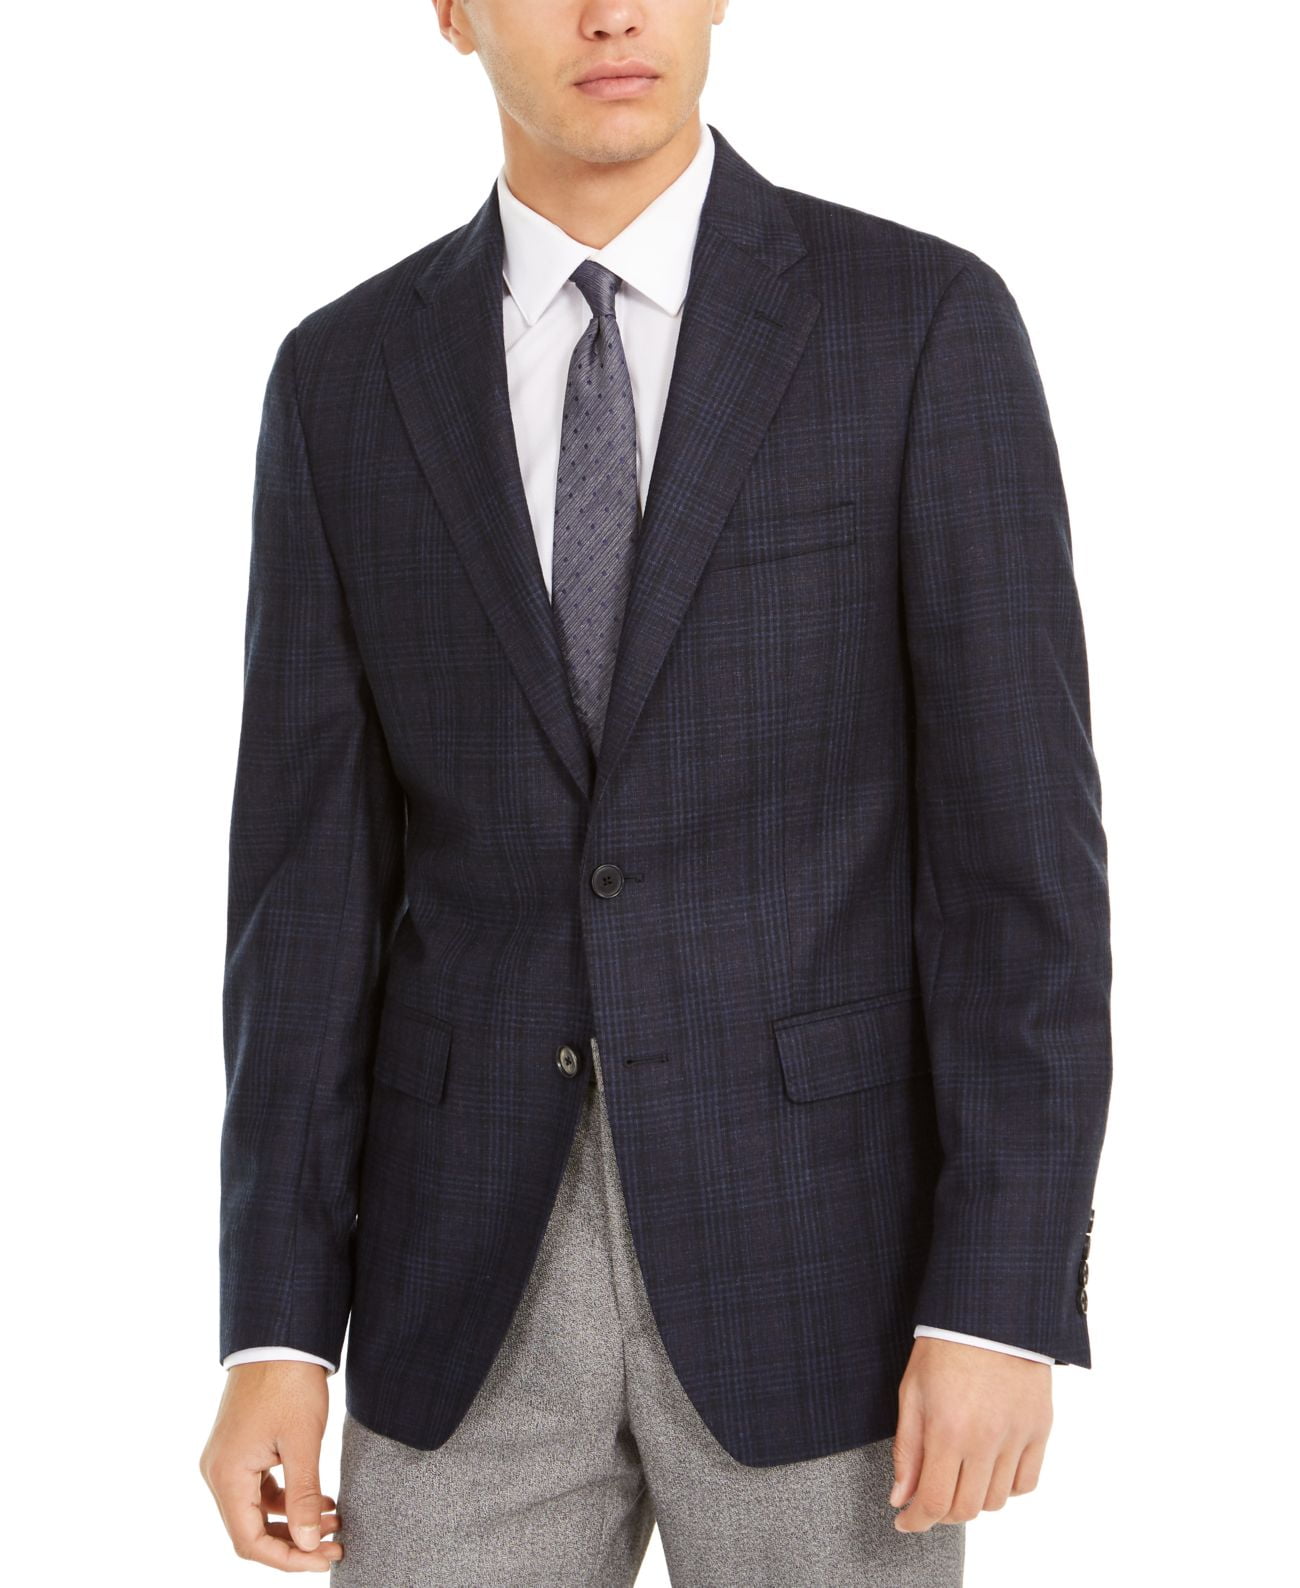 Gevoelig Van toepassing Weggegooid Calvin Klein Men's Slim-Fit Windowpane Wool Sport Coat (Blue, 50 R) -  Walmart.com